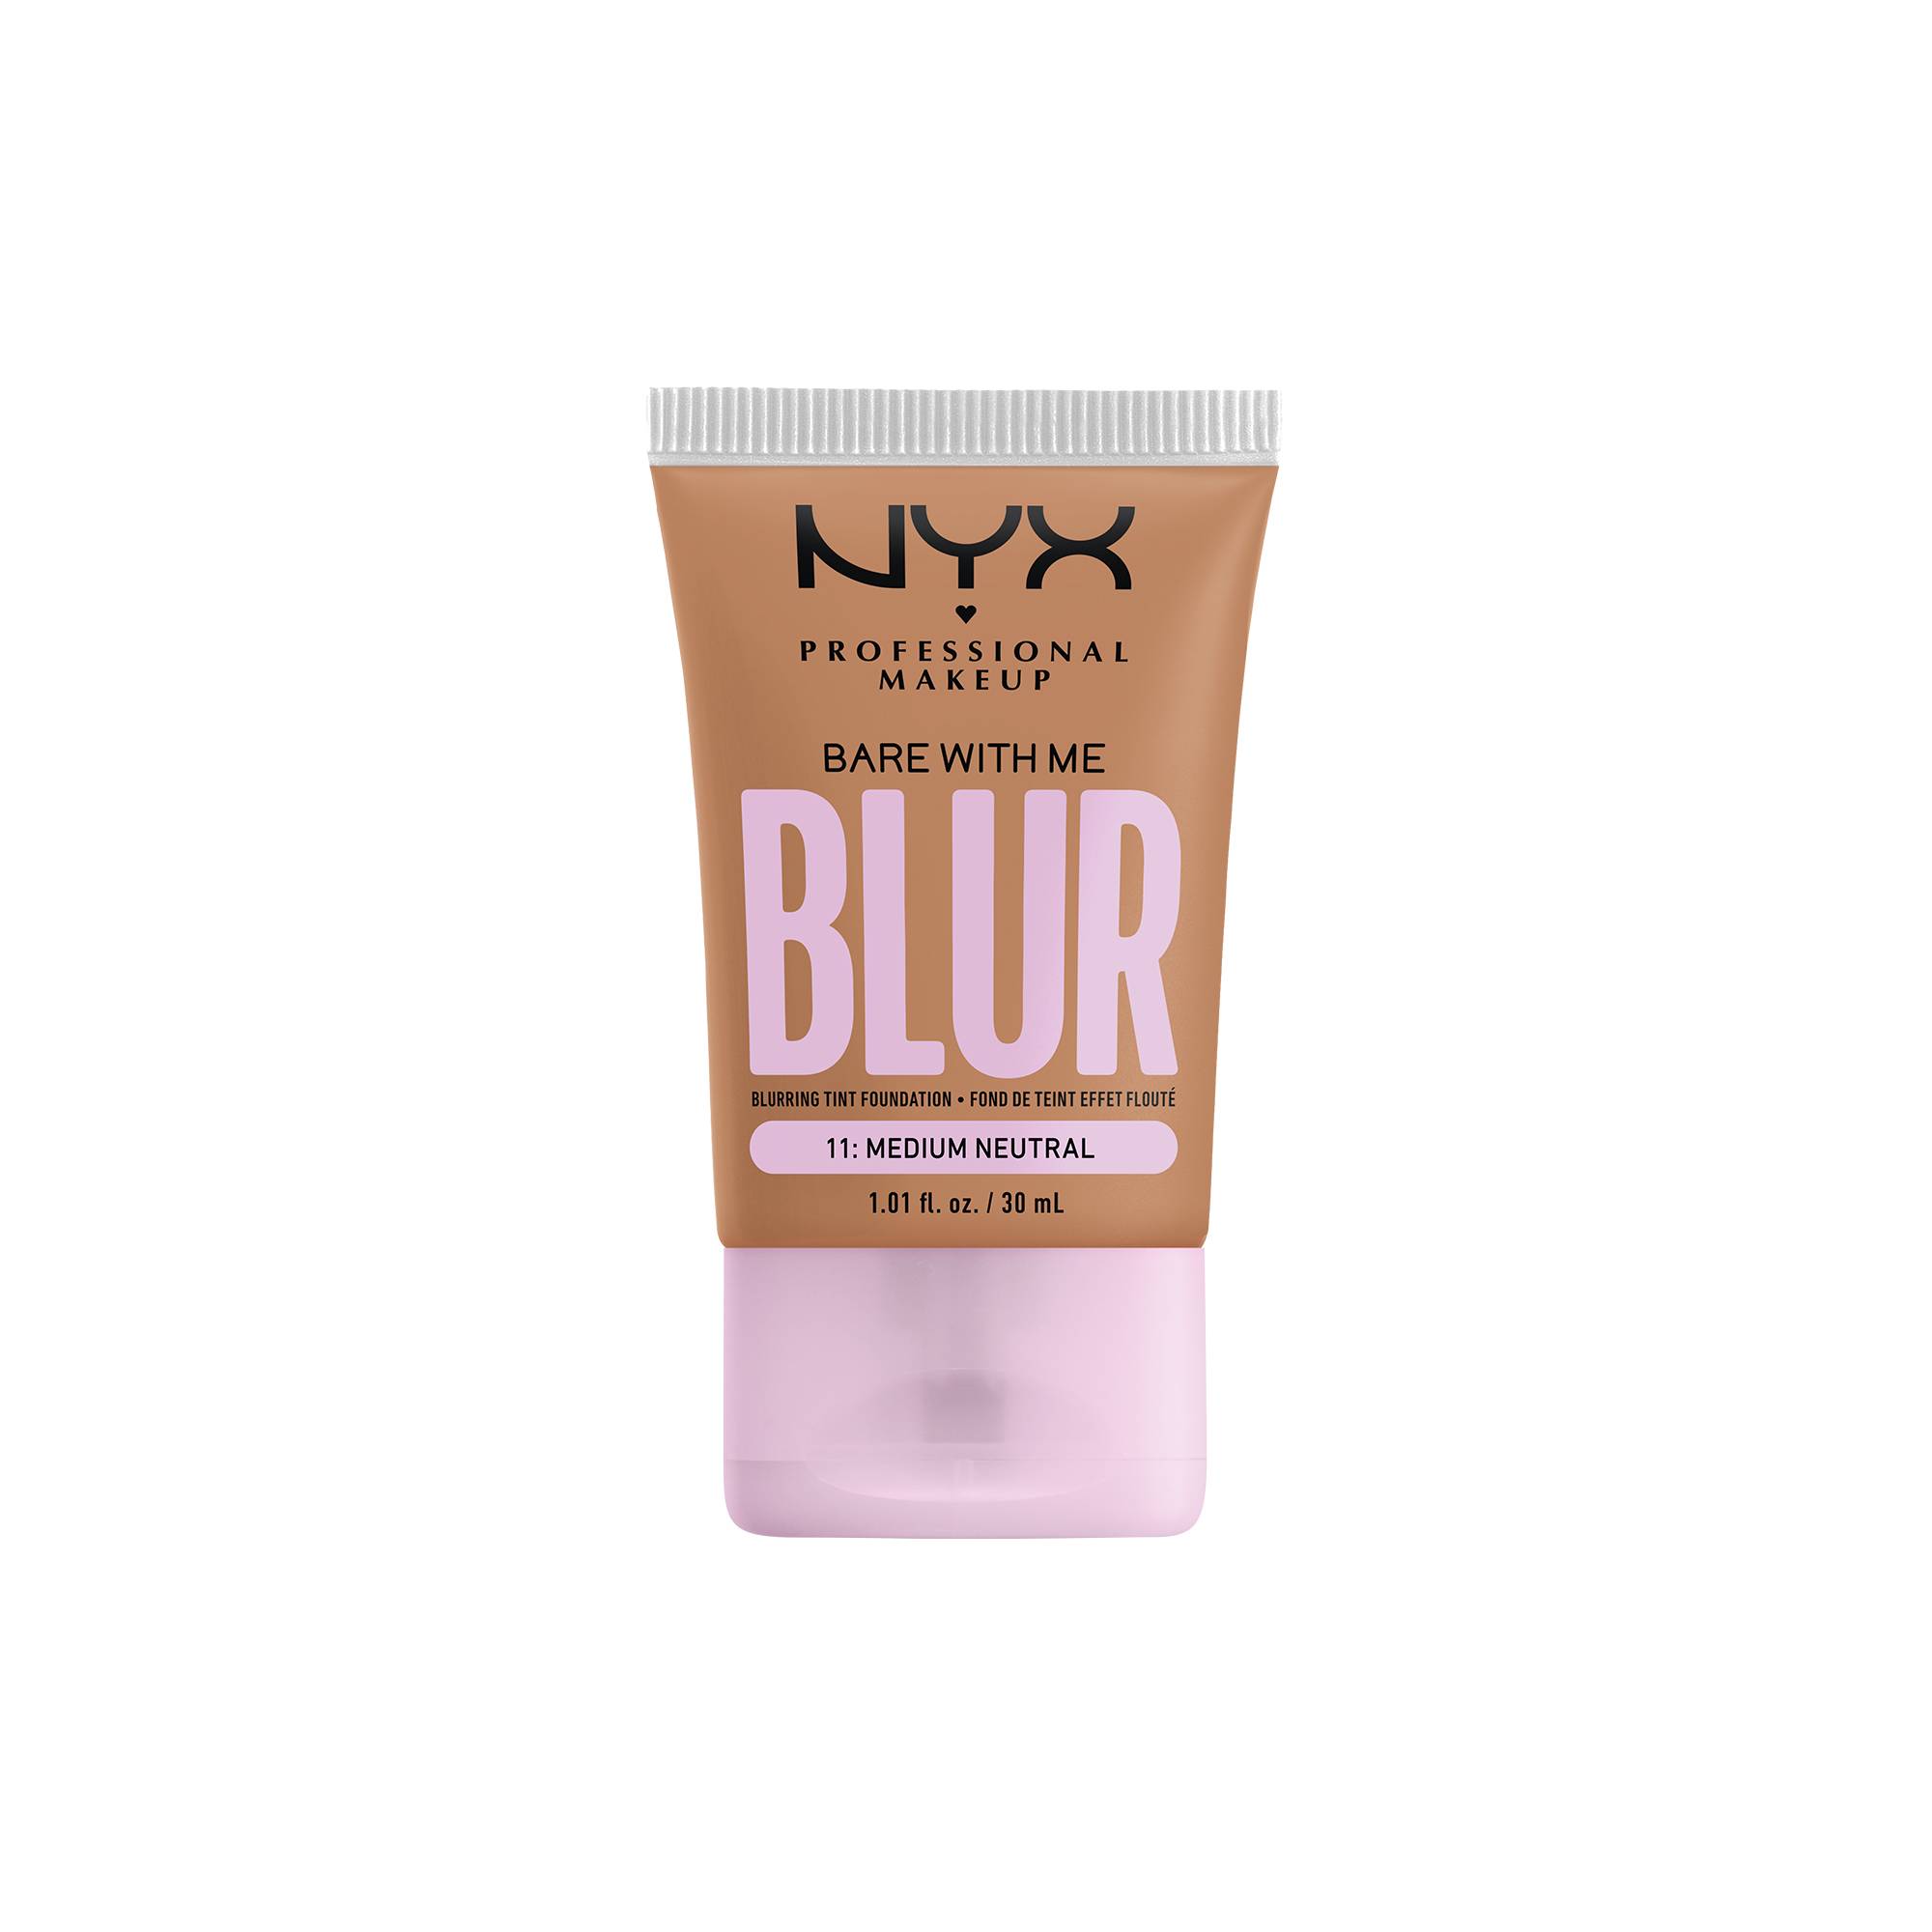 Fond de teint effet flouté Bare With Me Blur Medium Neutral de la marque NYX Professional Makeup - 1